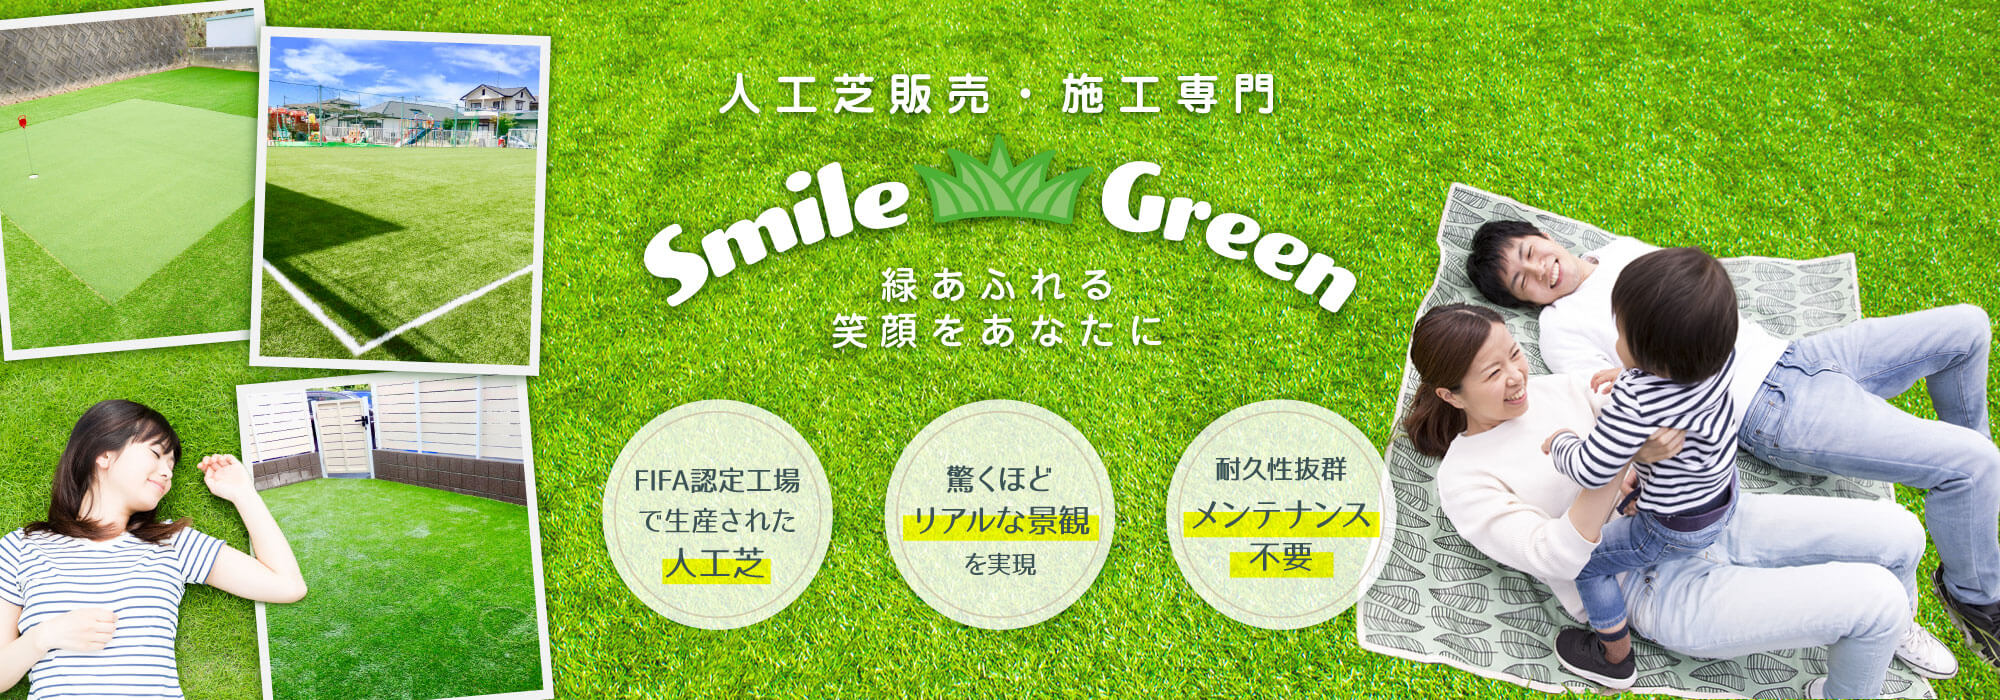 緑あふれる笑顔をあなたに。人工芝ならスマイルグリーン